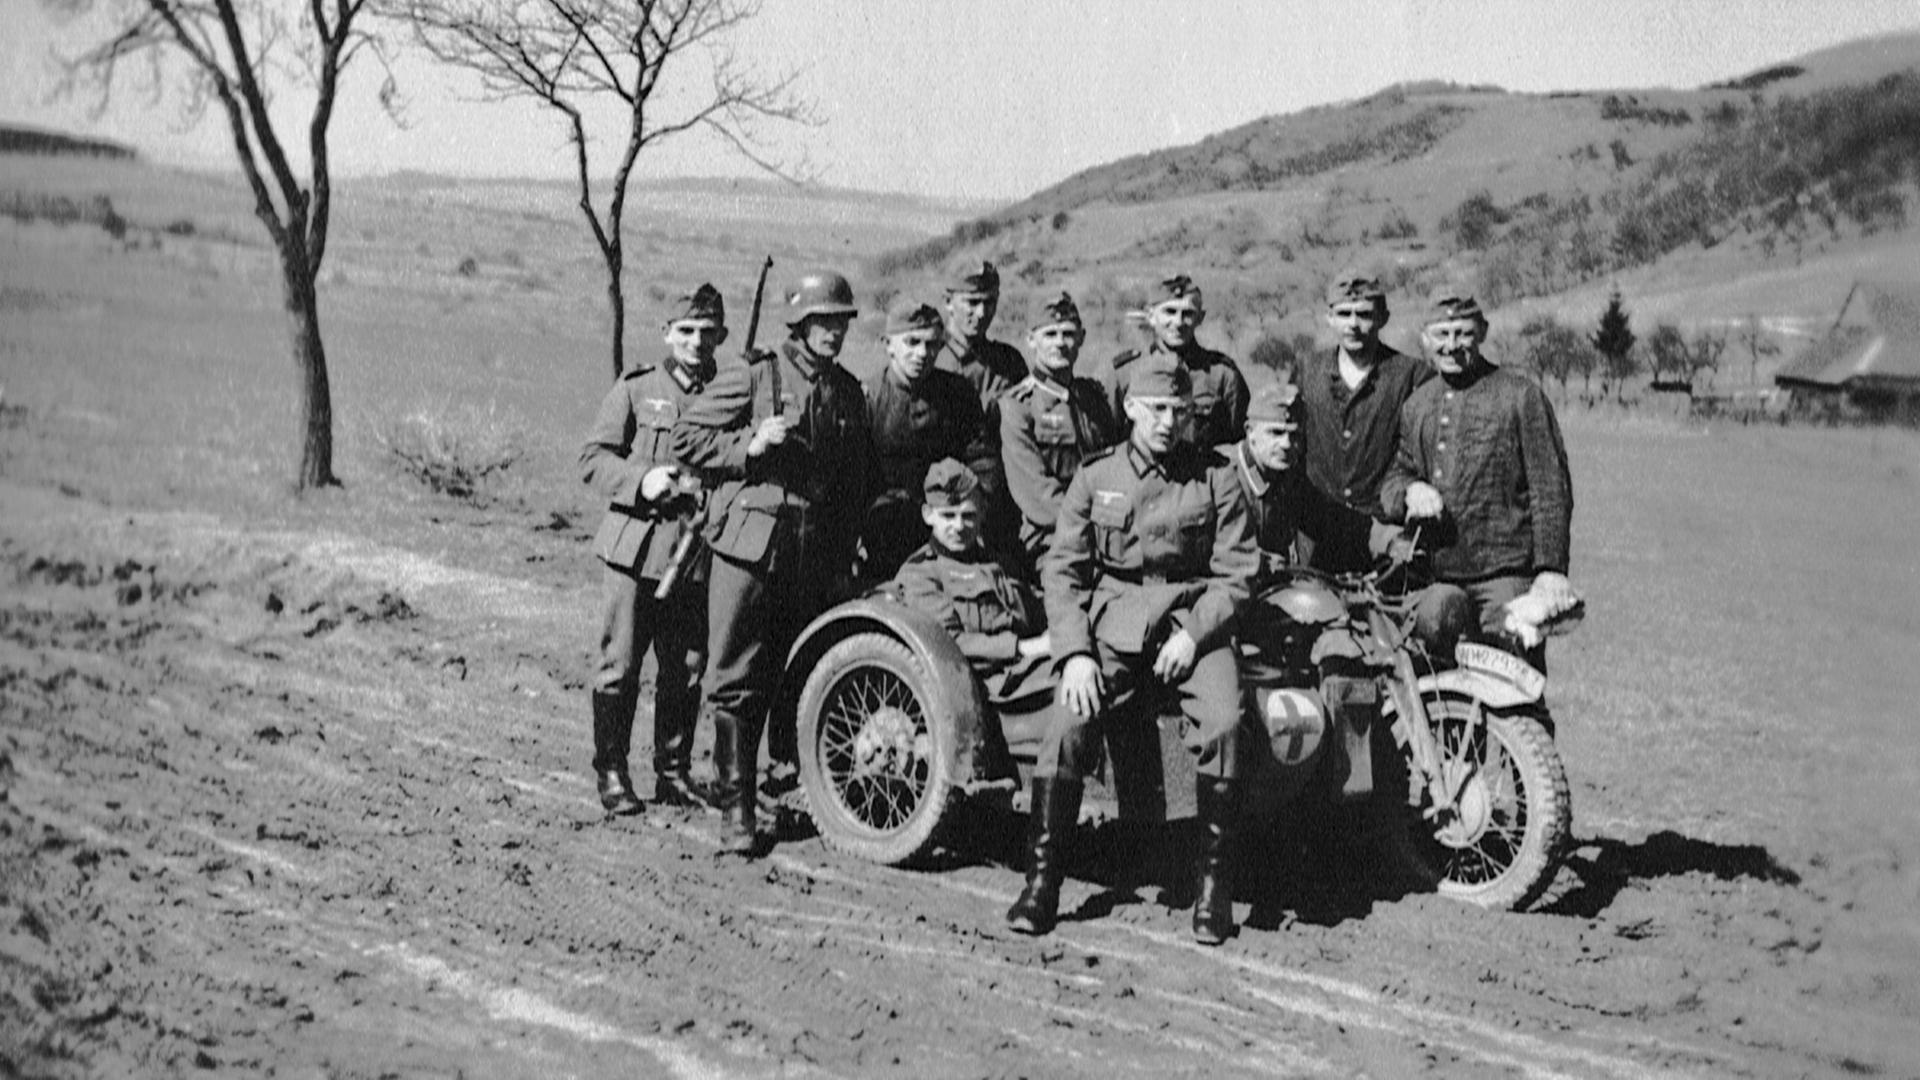 Kradfahrer und Soldaten haben sich zu einem Gruppenfoto in Frankreich aufgestellt - Herbst 1940.